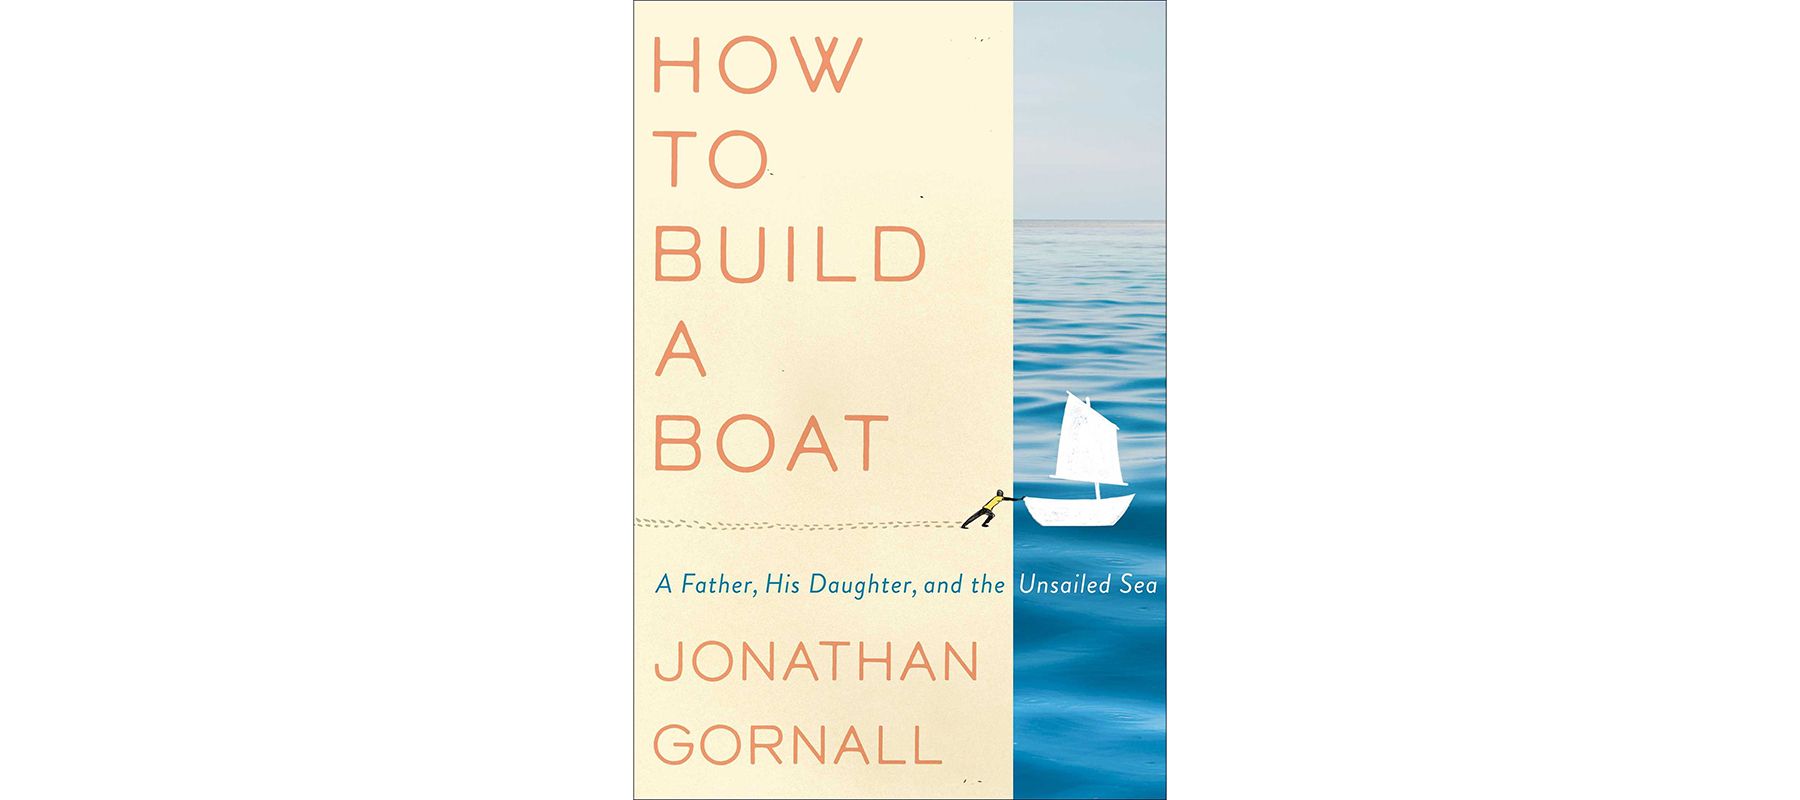 כריכה של איך לבנות סירה מאת ג'ונתן גורנאל